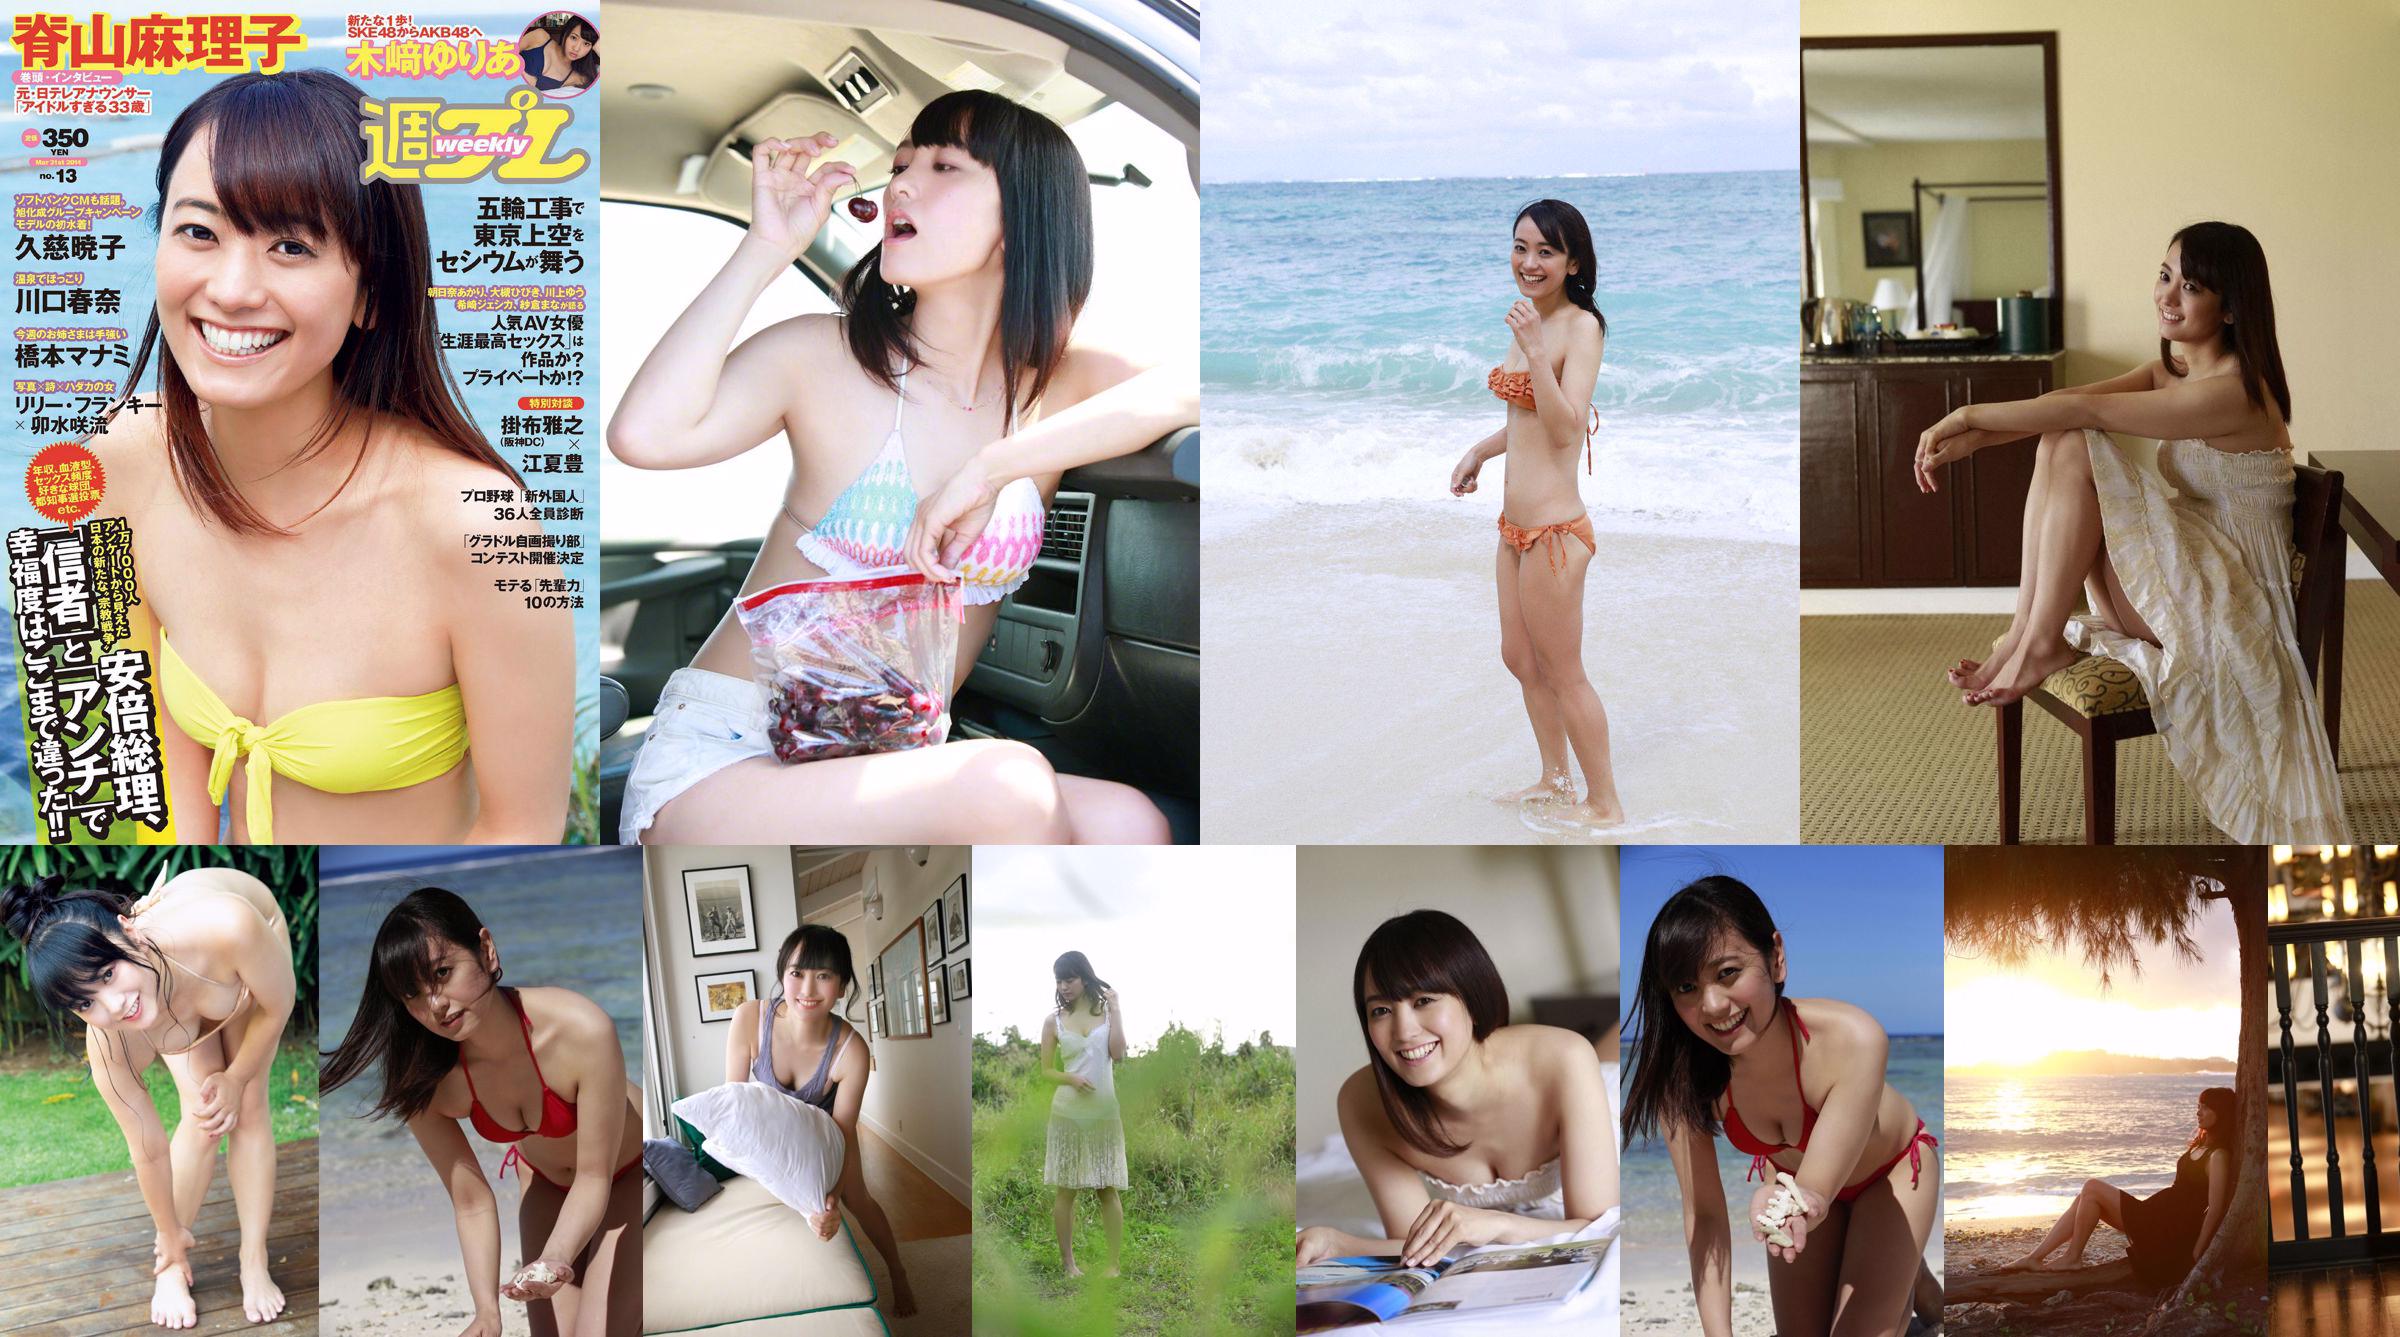 Mariko Seyama [Wanibooks] #140 No.527147 Page 10